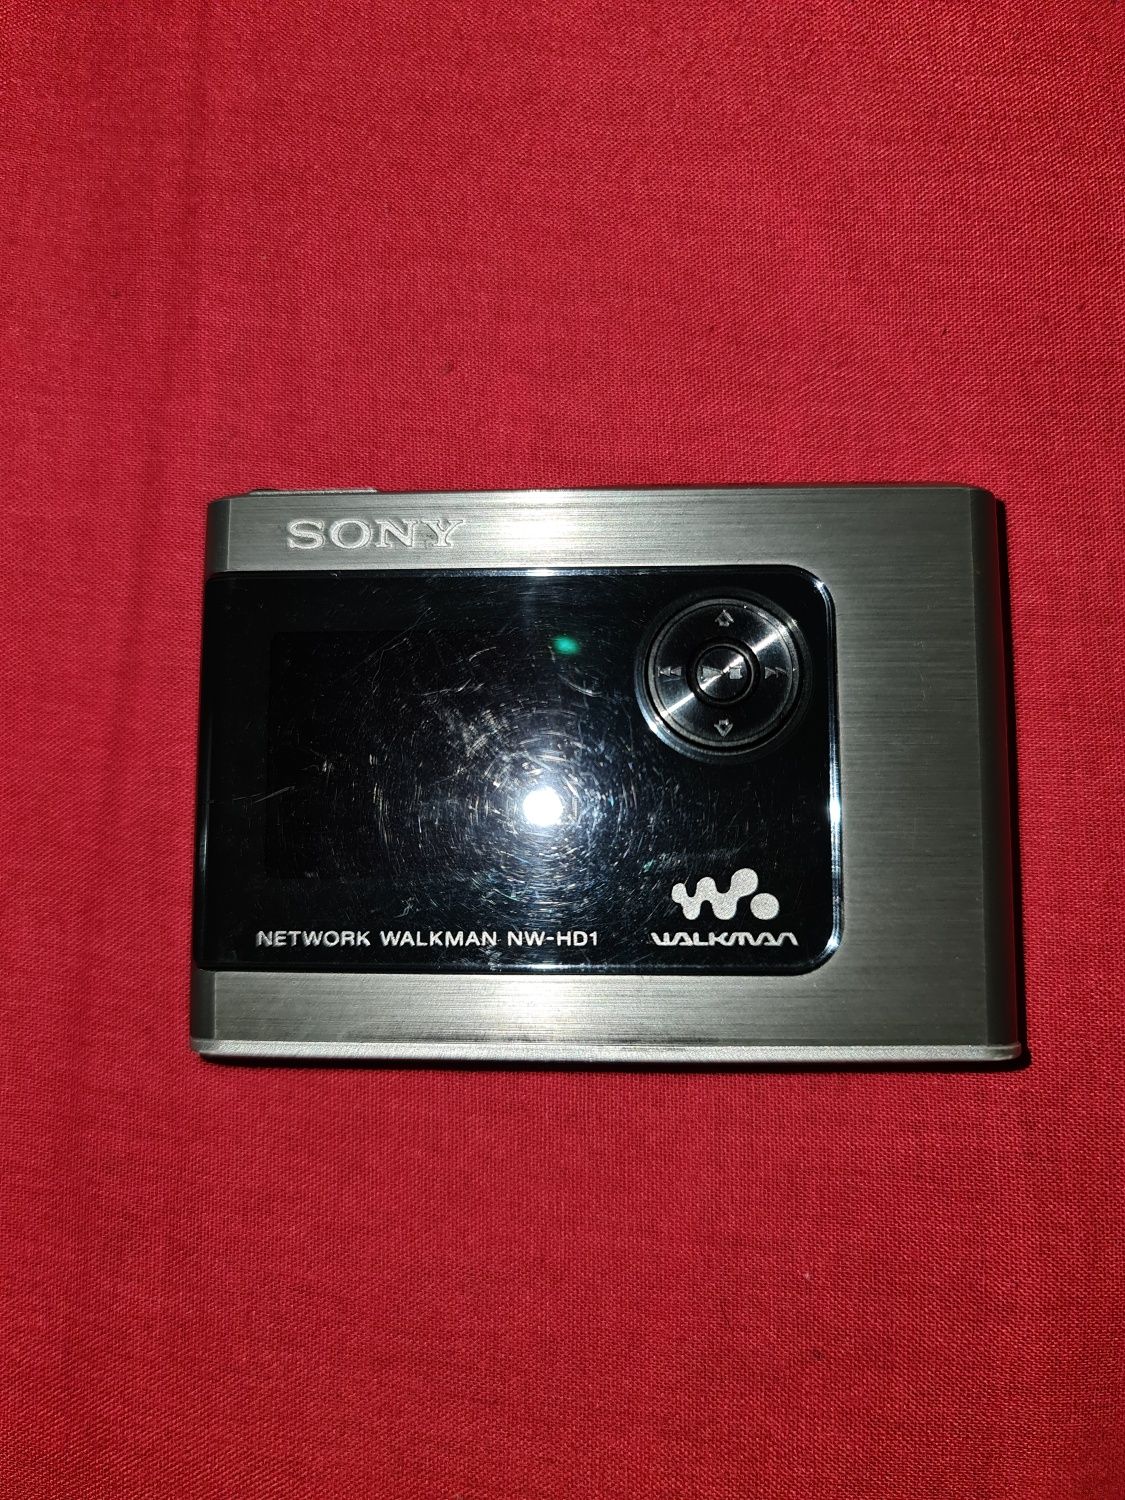 Sony Walkman Network NW-HD1